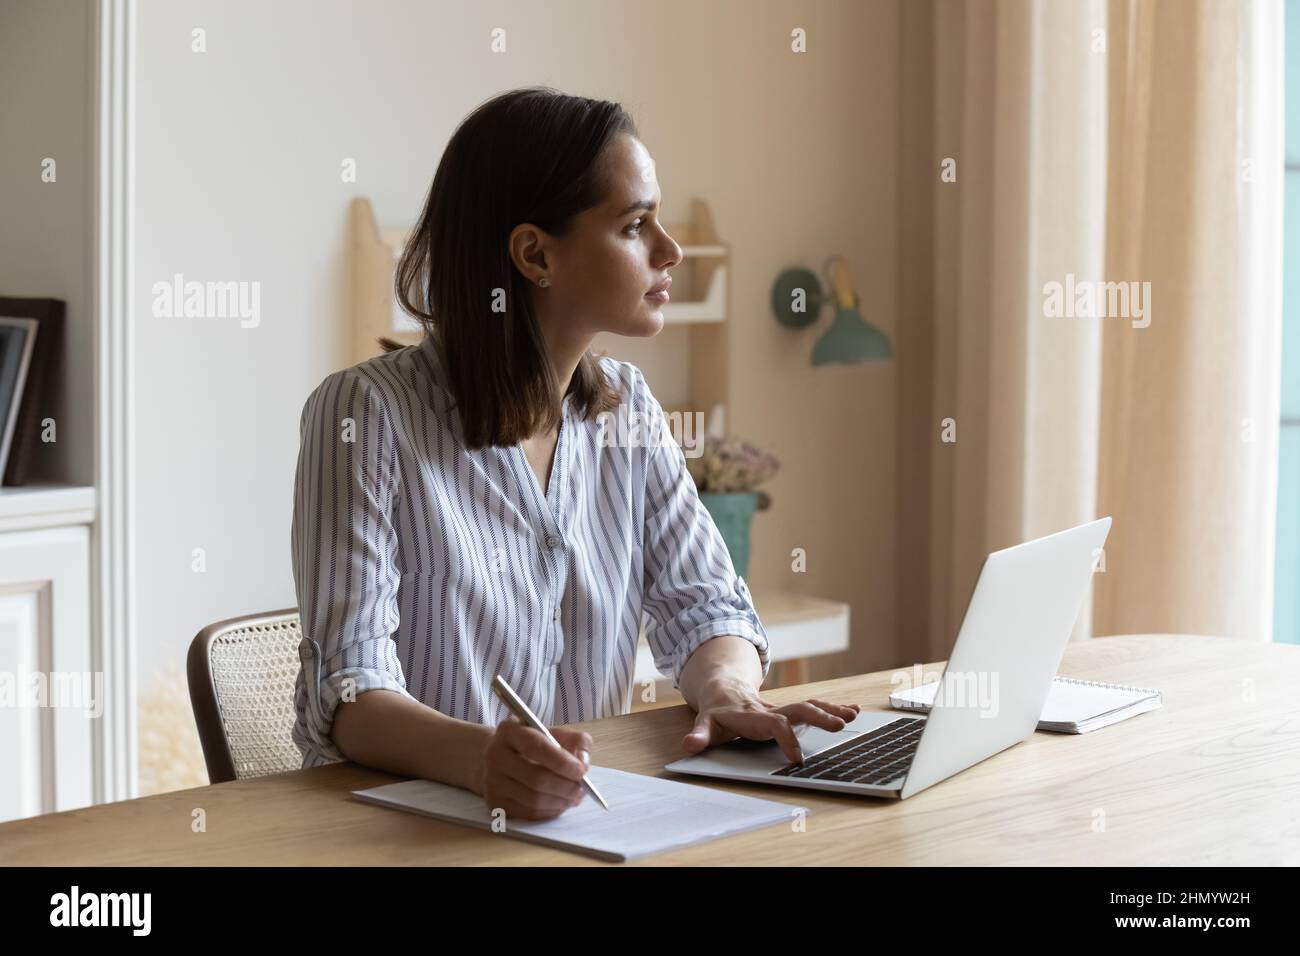 Abgelenkt von Computerarbeit nachdenkliche junge Geschäftsfrau, die in der Ferne schaut. Stockfoto